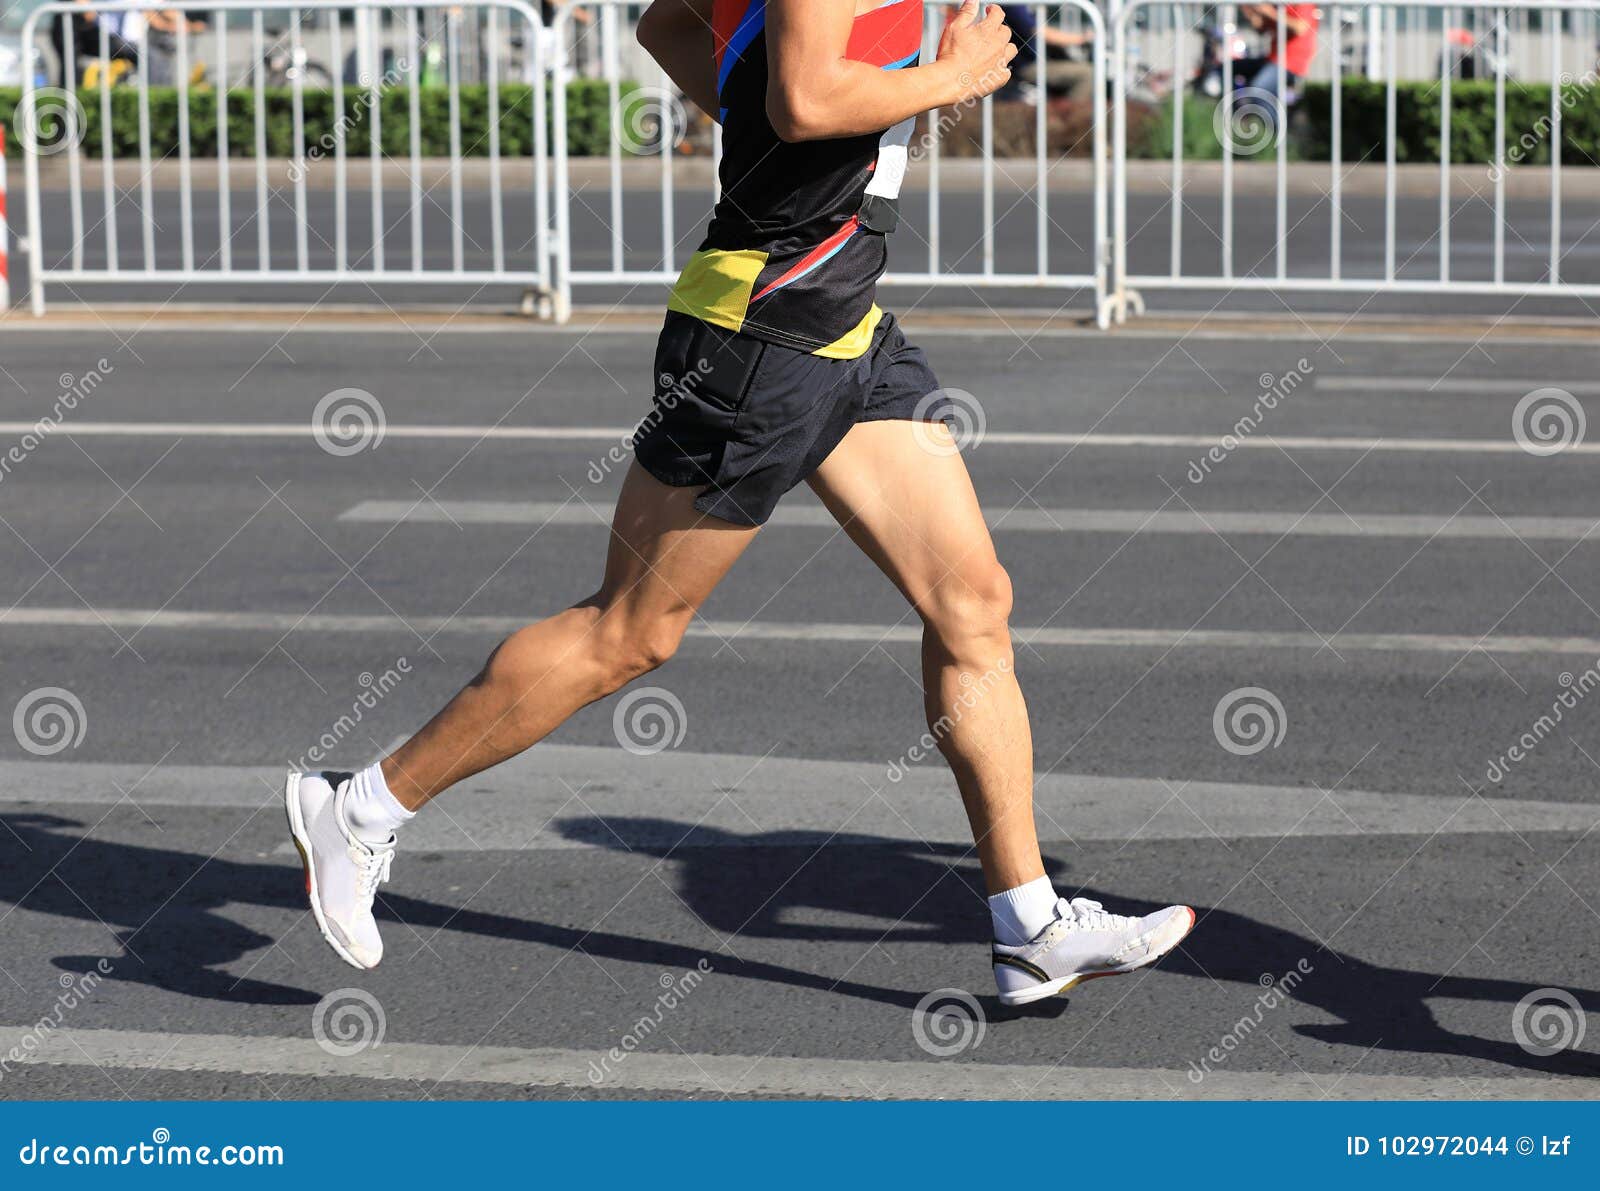 runner running on city road